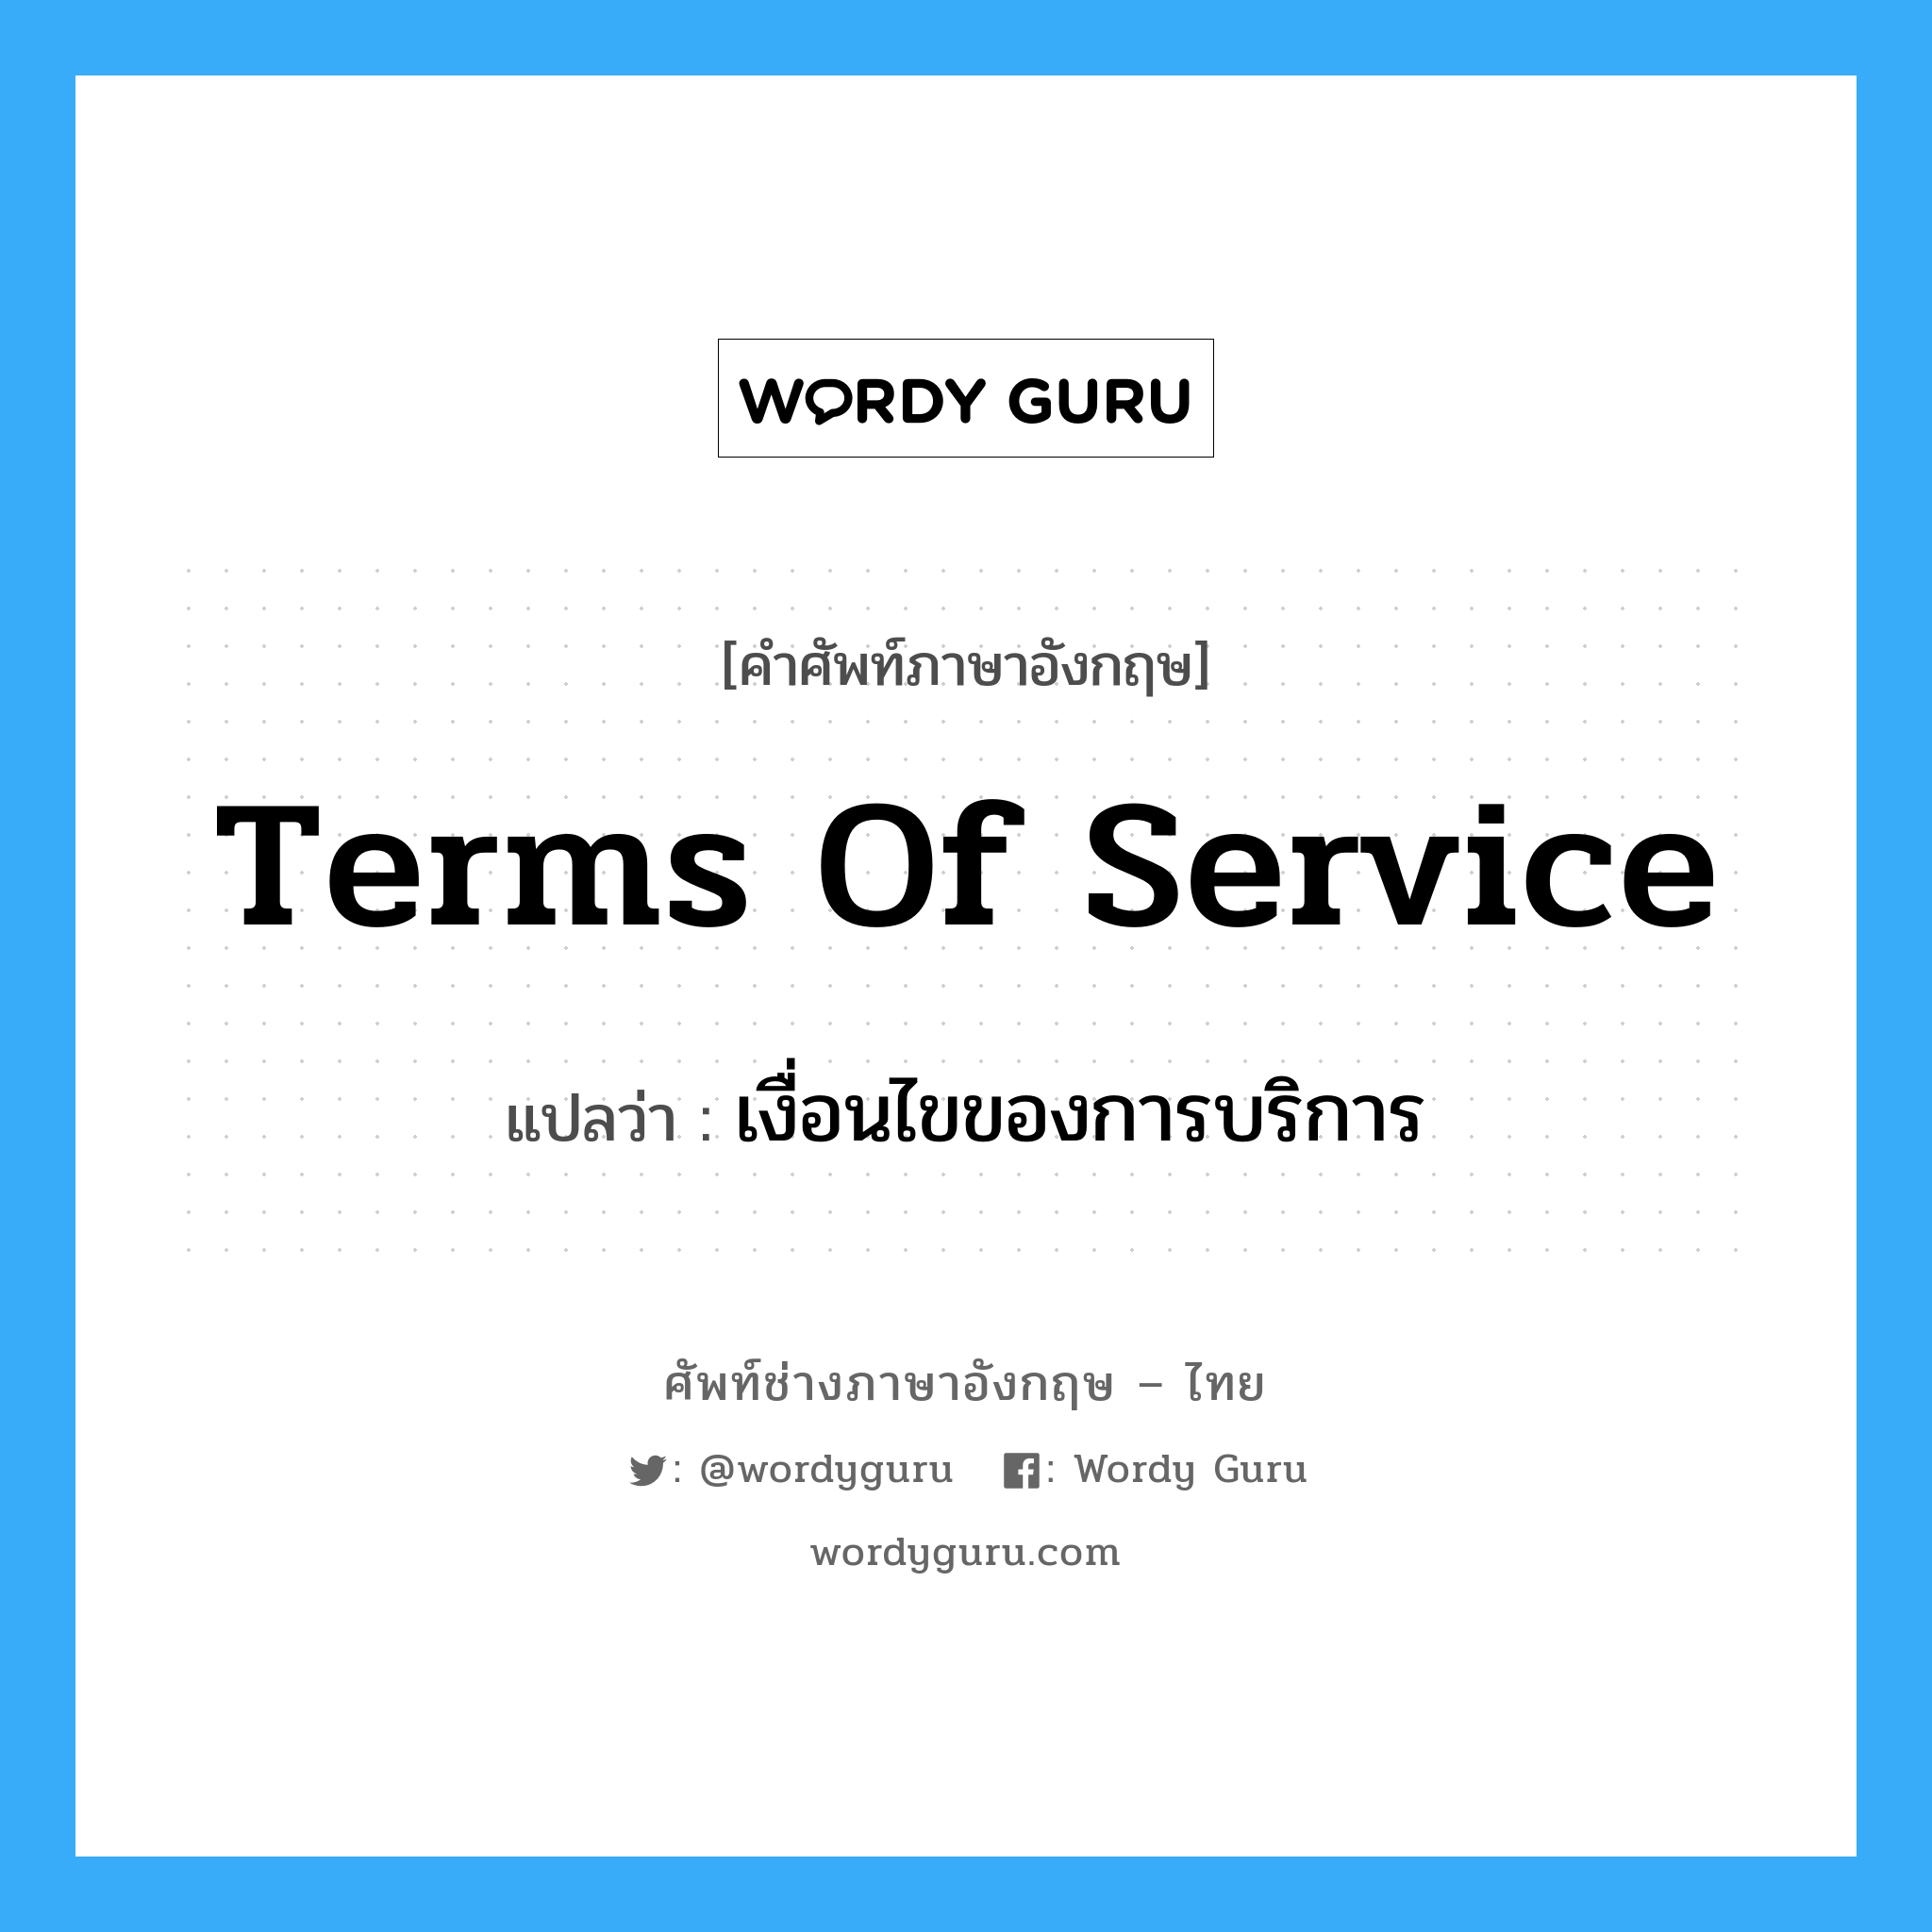 Terms of Service แปลว่า?, คำศัพท์ช่างภาษาอังกฤษ - ไทย Terms of Service คำศัพท์ภาษาอังกฤษ Terms of Service แปลว่า เงื่อนไขของการบริการ